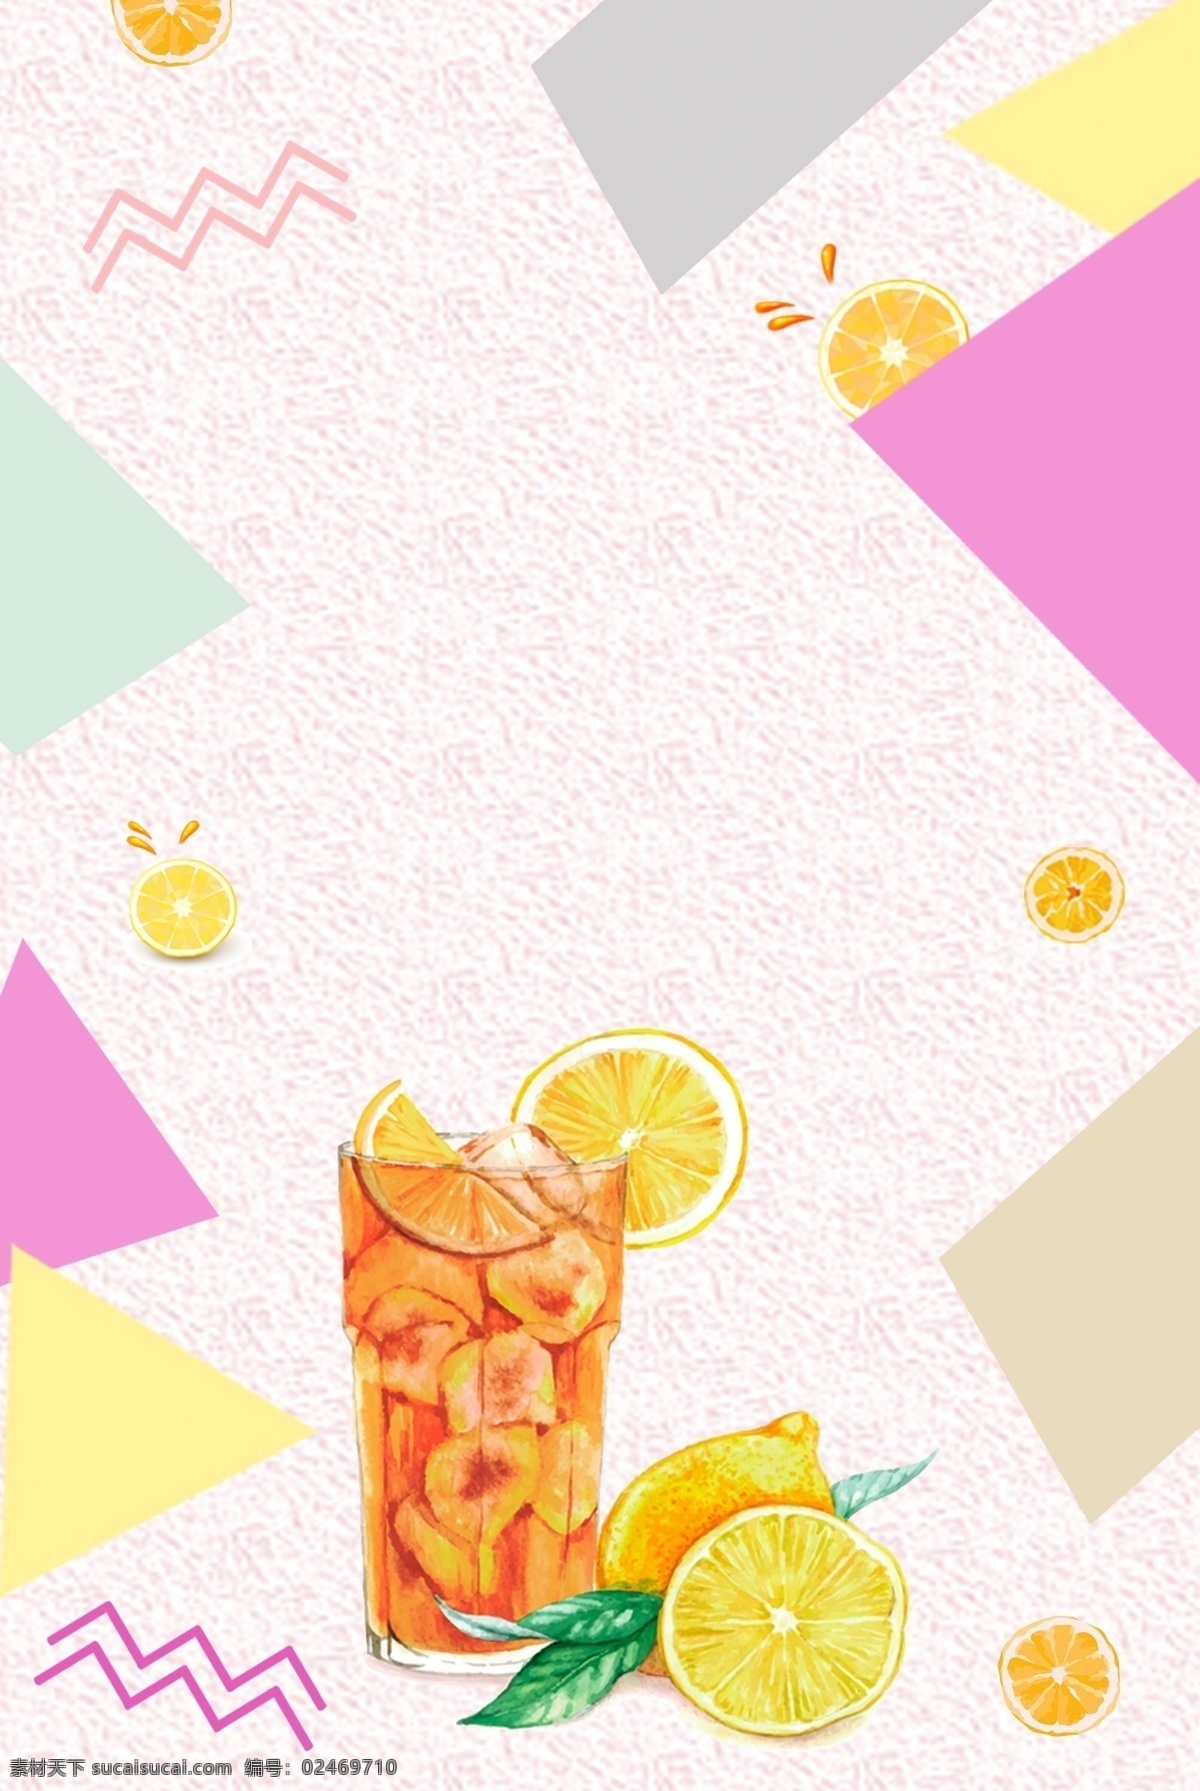 夏日 降 暑 橙汁 海报 背景 降暑 简约 清新 饮料 矩形 撞色 果汁 psd分层 海报背景